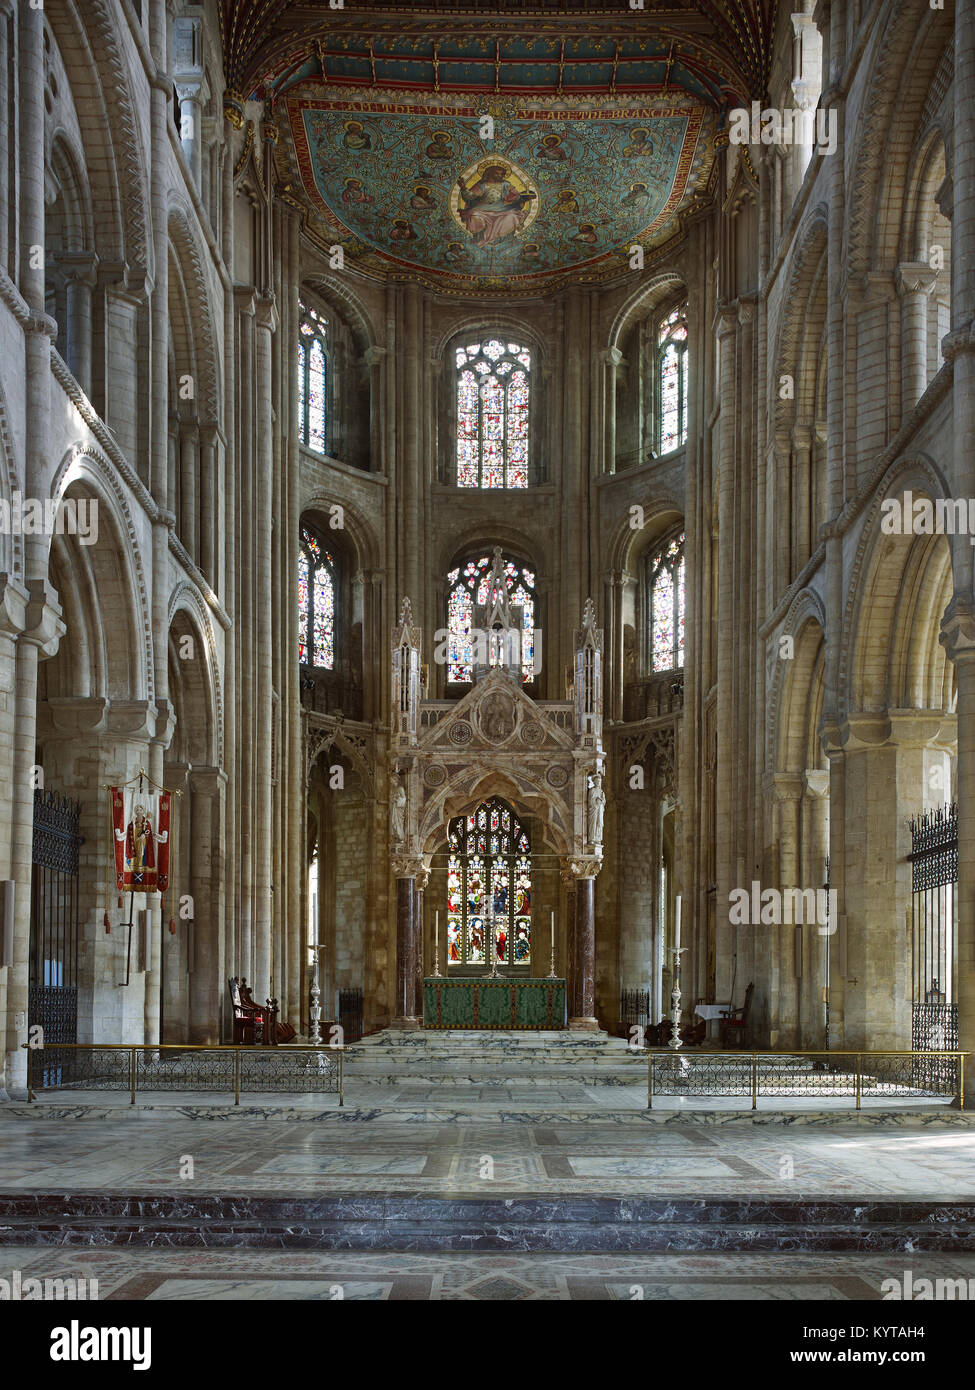 La catedral de Peterborough. Presbiterio mirando al oriente con ábside semicircular. Alabastro victoriano baldacchino de 1893-4 por J.L. Pearson Foto de stock